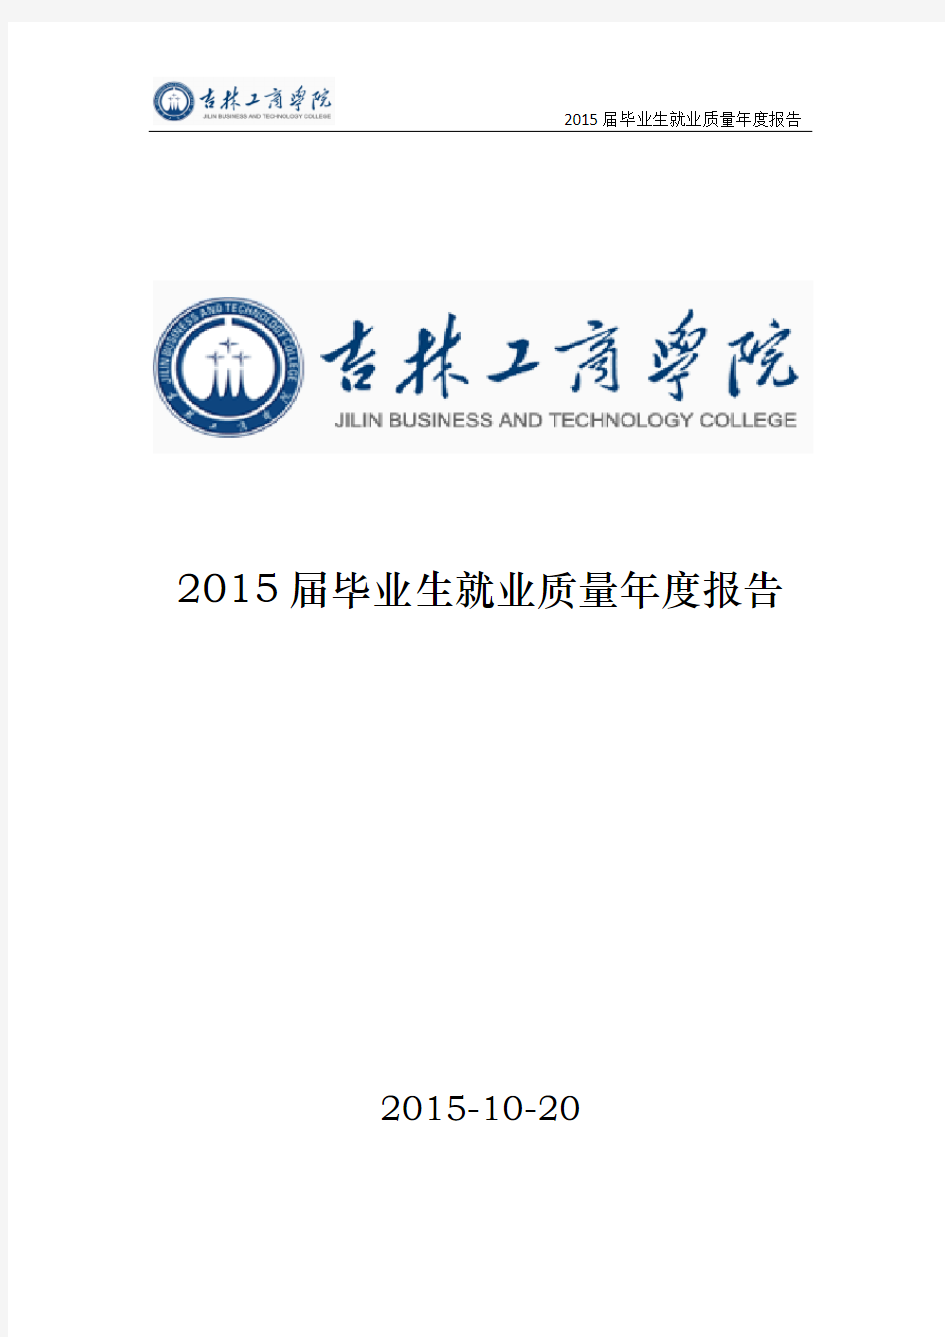 吉林工商学院2015届毕业生就业质量年度报告